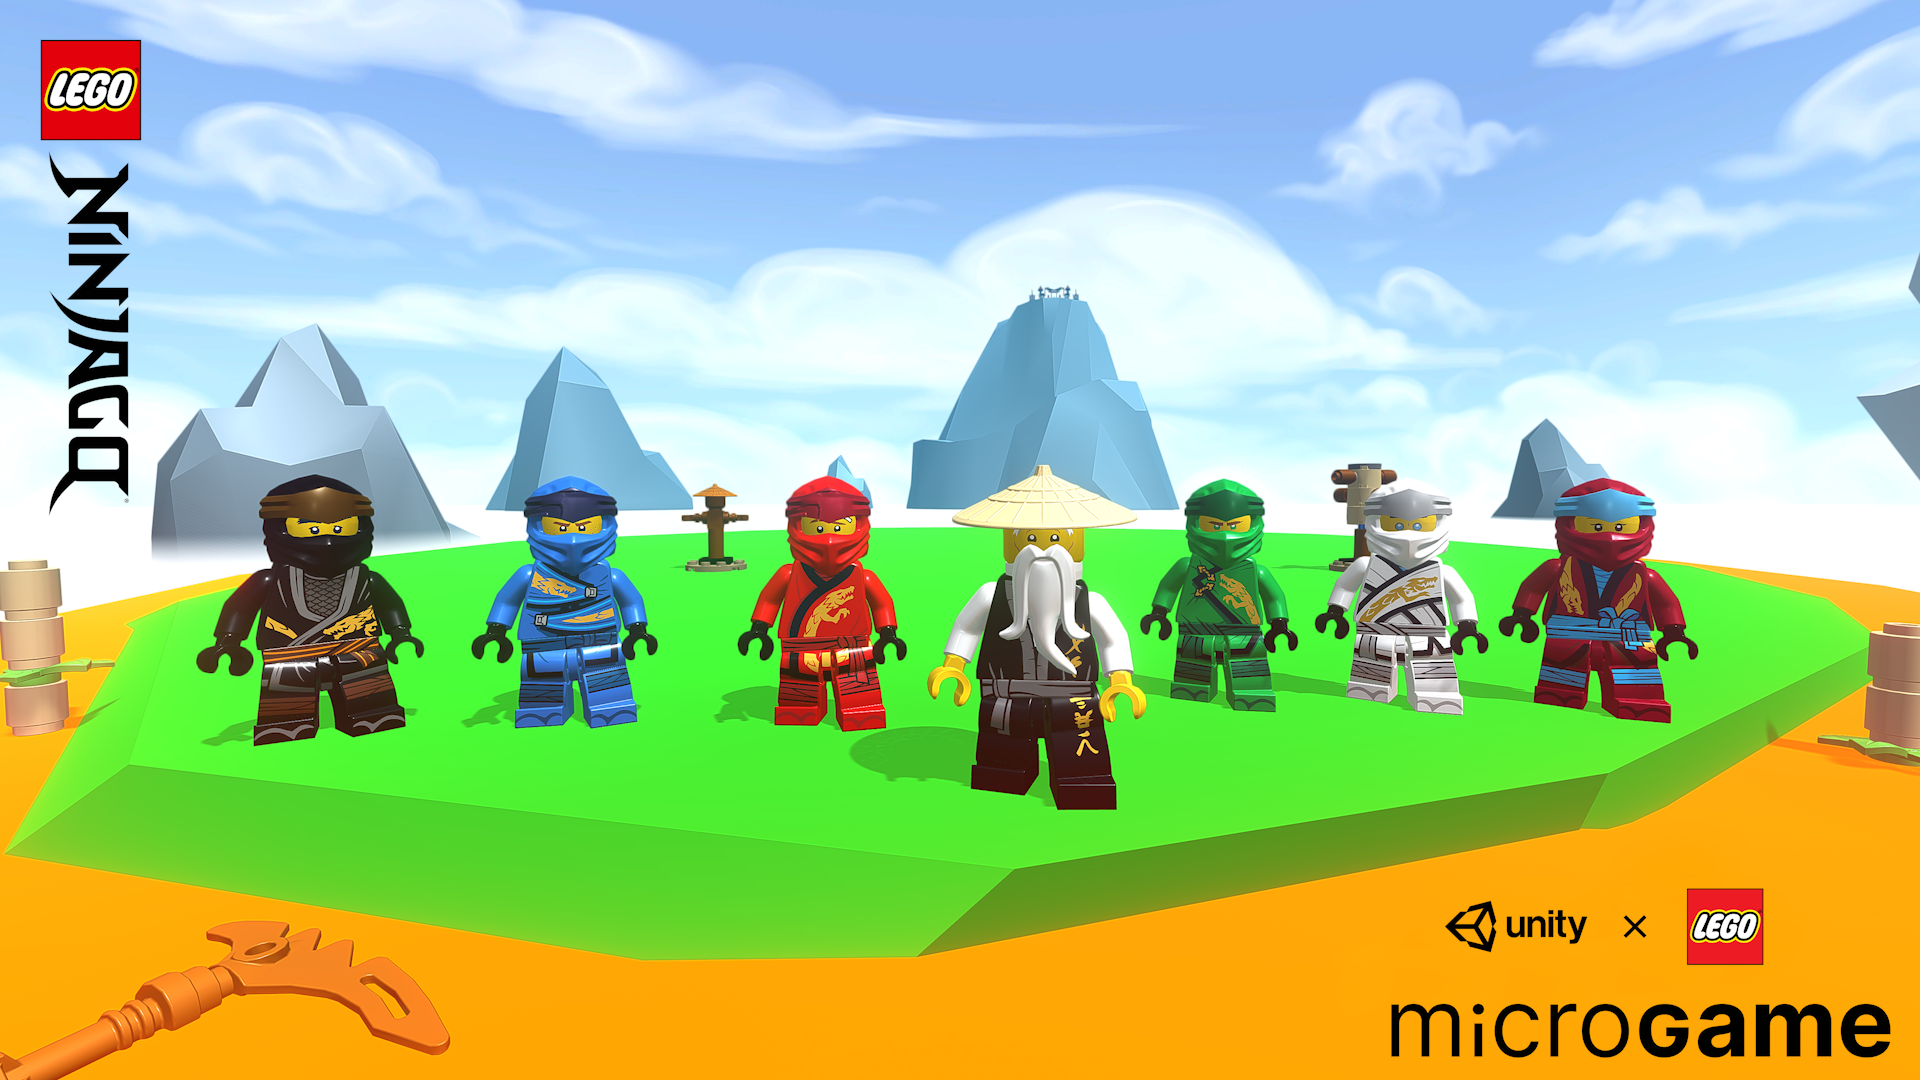 LEGO Ninjago Microgame Contest